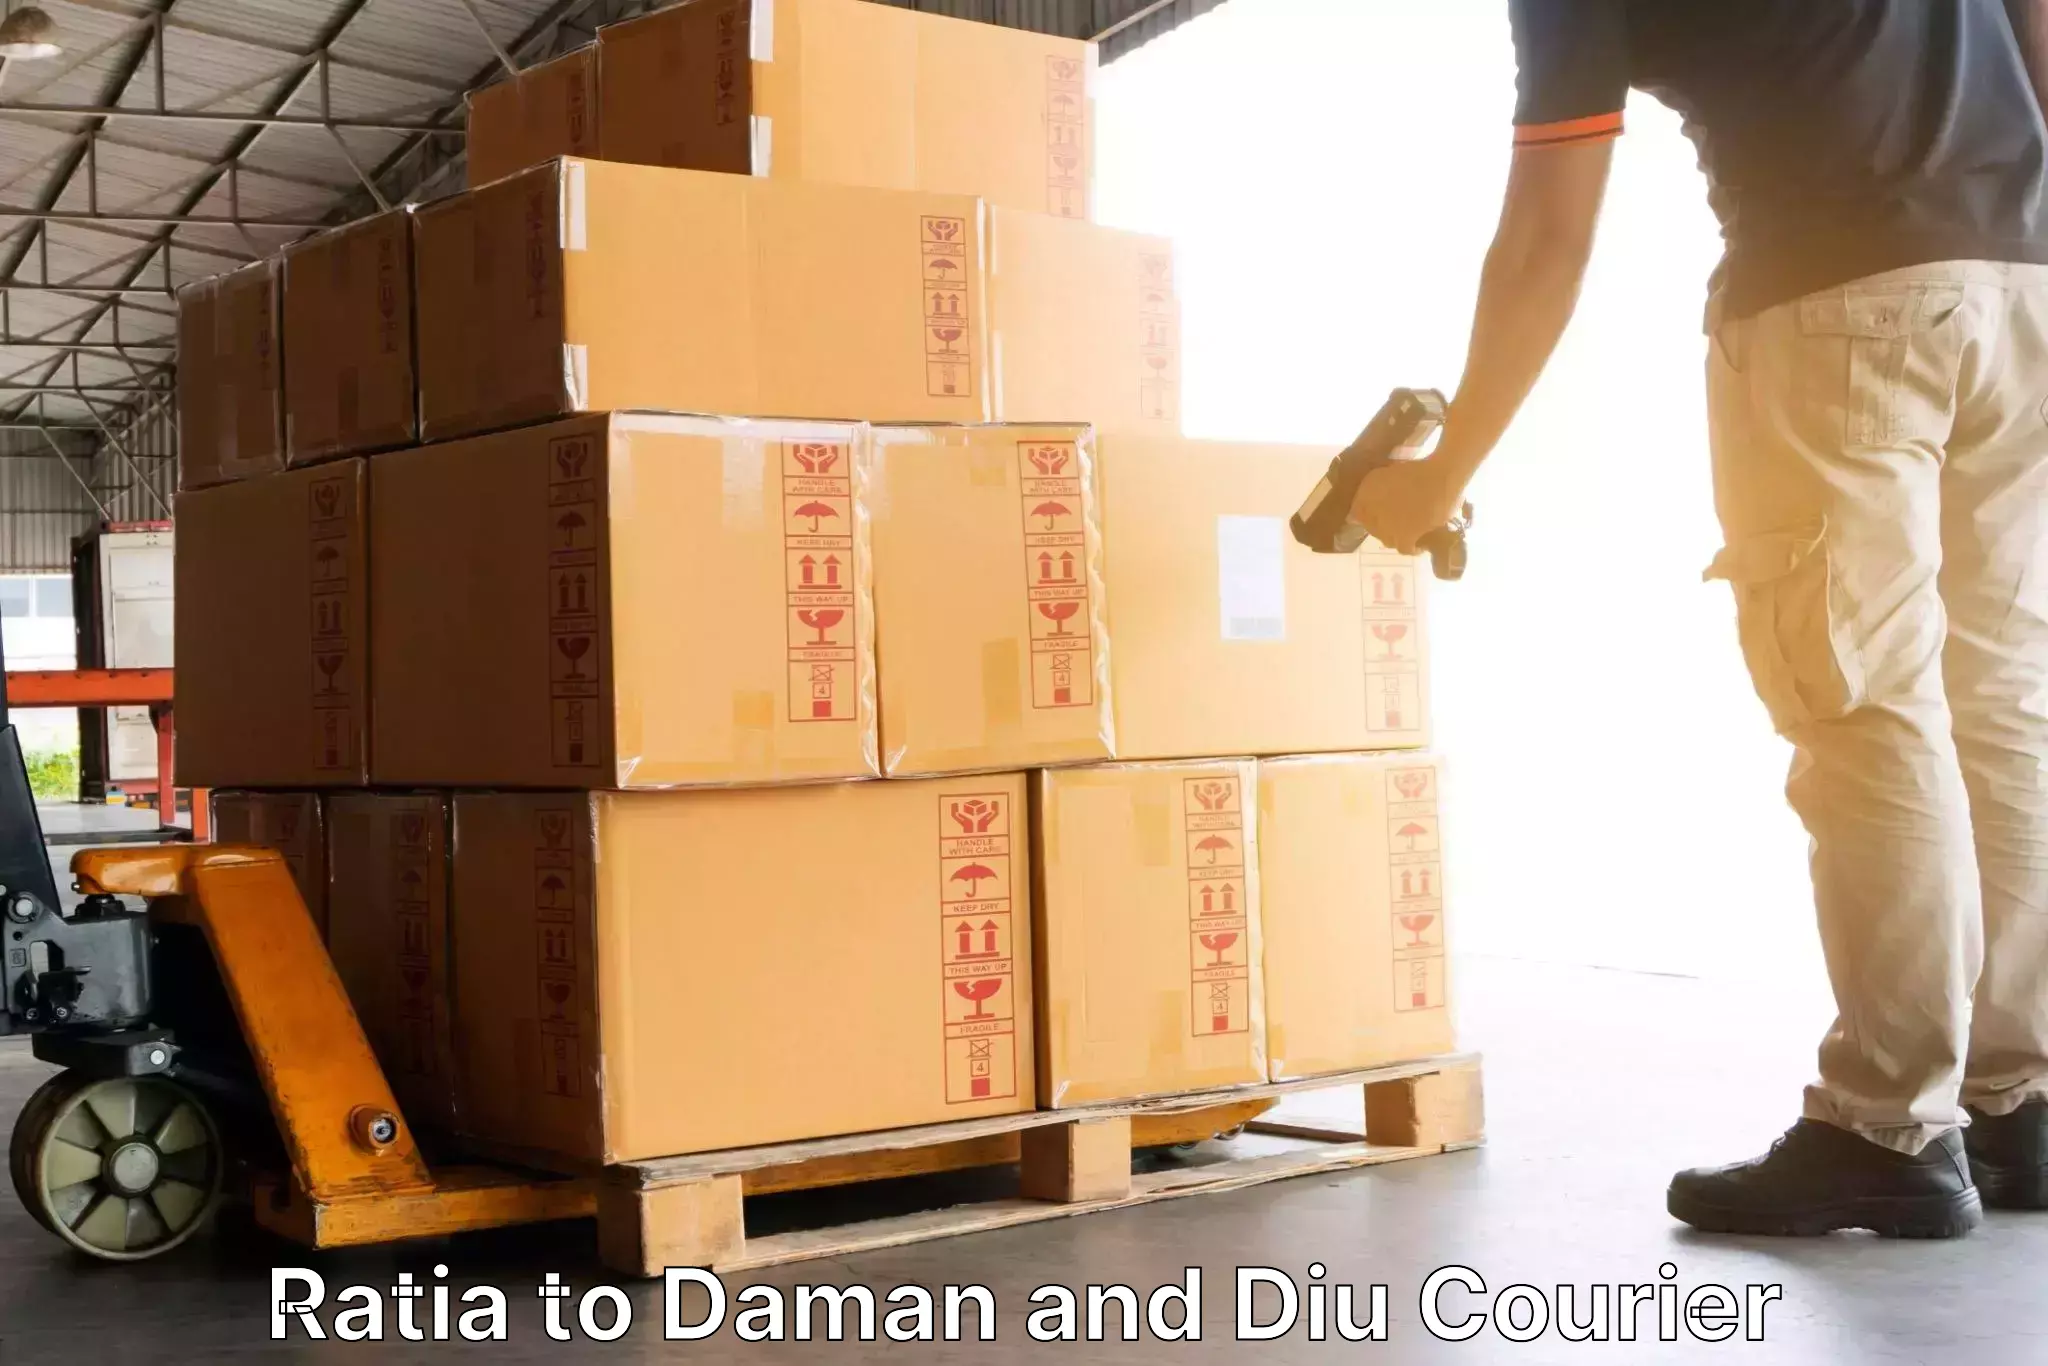 International courier rates Ratia to Daman